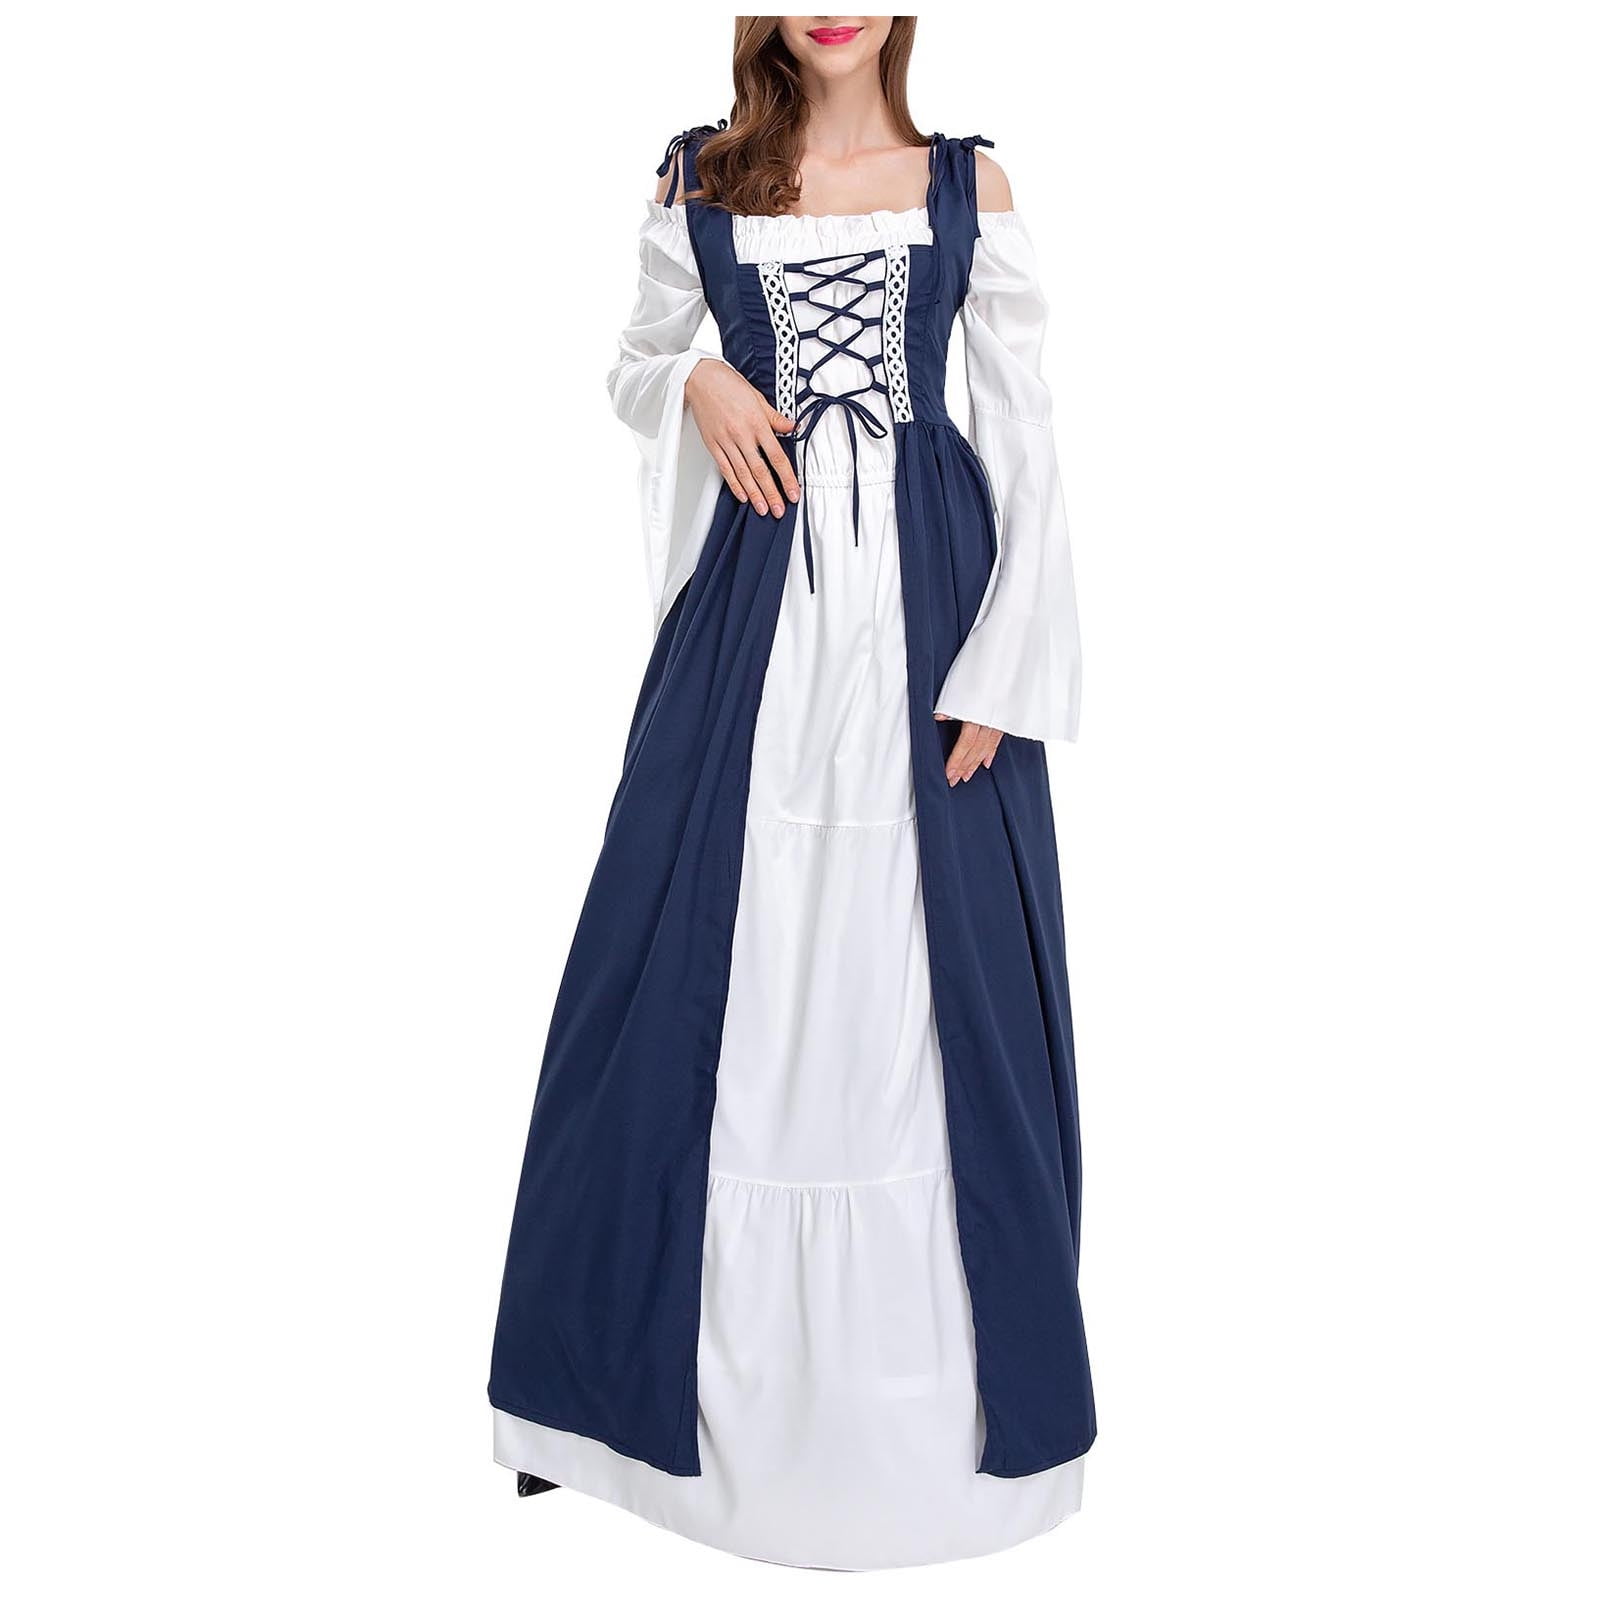 REORIAFEE Renaissance Dresses for Women Costume Renaissance Dress Ball ...